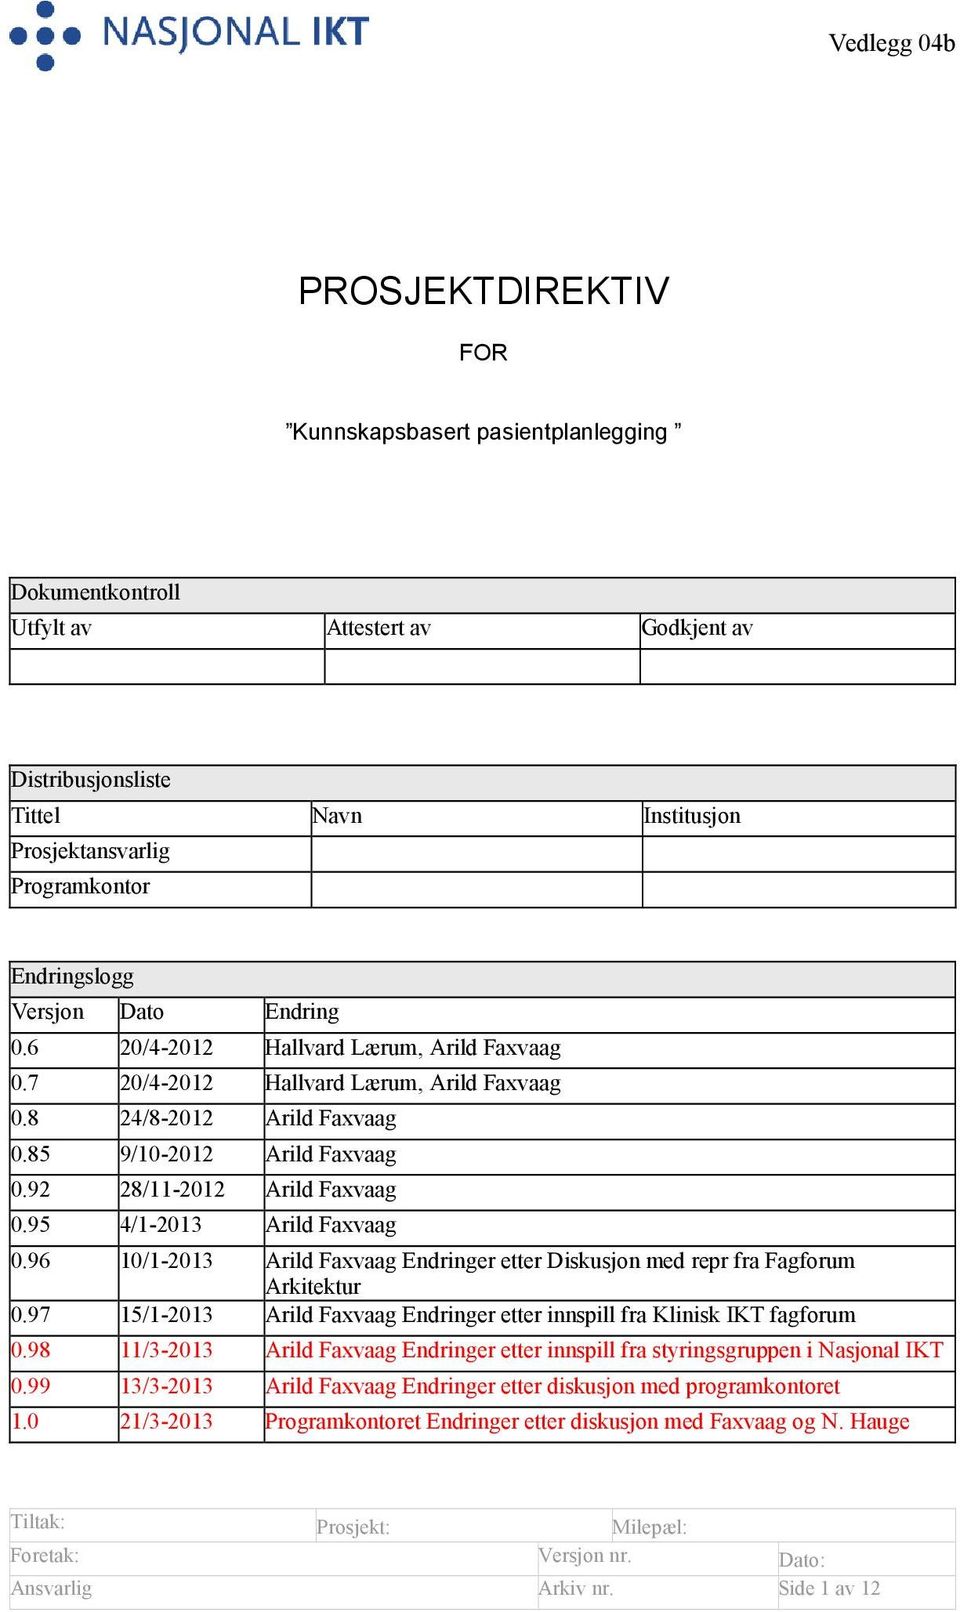 92 28/11-2012 Arild Faxvaag 0.95 4/1-2013 Arild Faxvaag 0.96 10/1-2013 Arild Faxvaag Endringer etter Diskusjon med repr fra Fagforum Arkitektur 0.